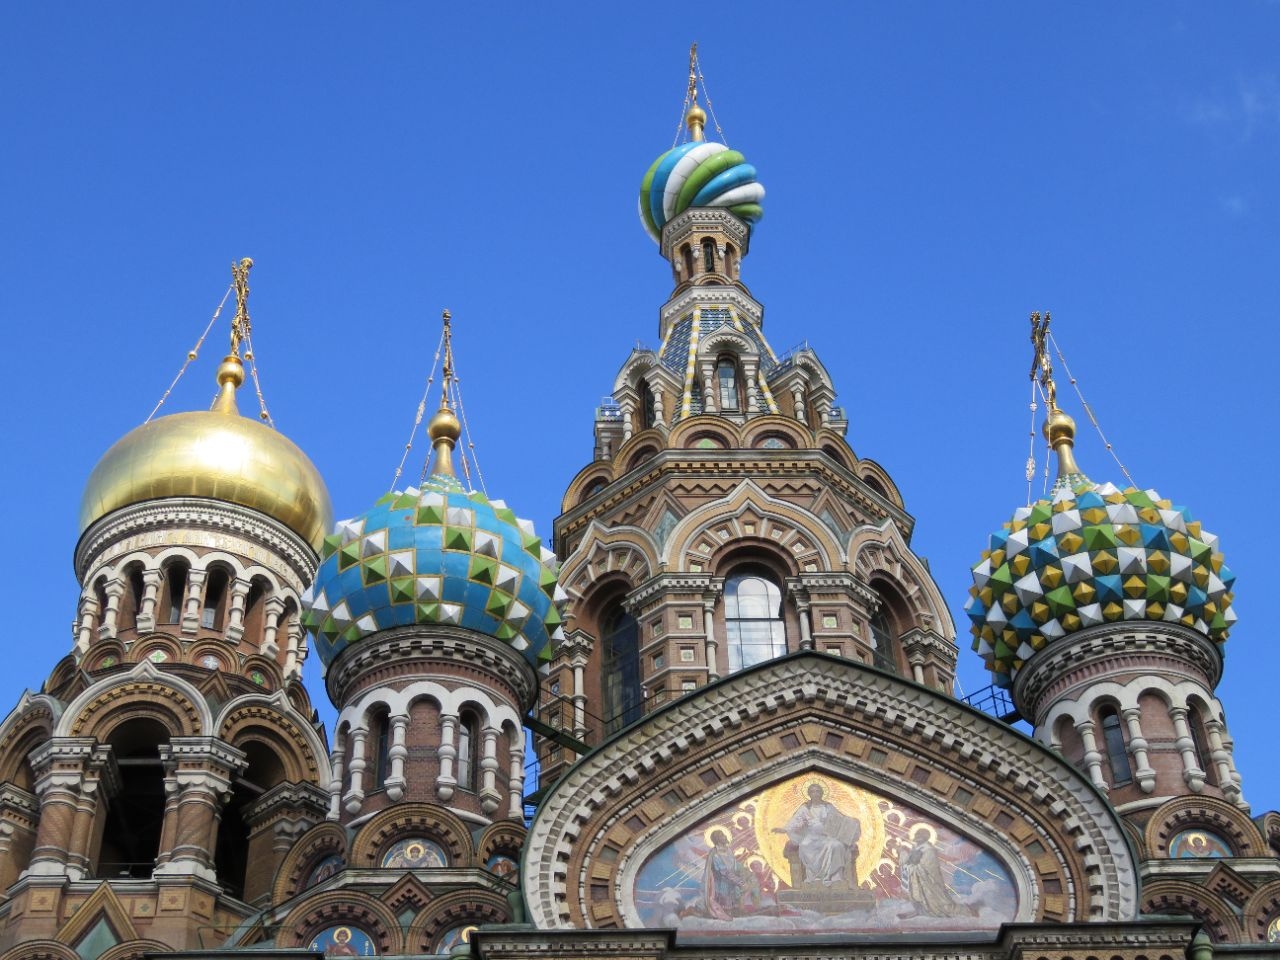 Жизни нашей ажур кружевной вяжешь ты каждый день, каждый час Санкт-Петербург, Россия